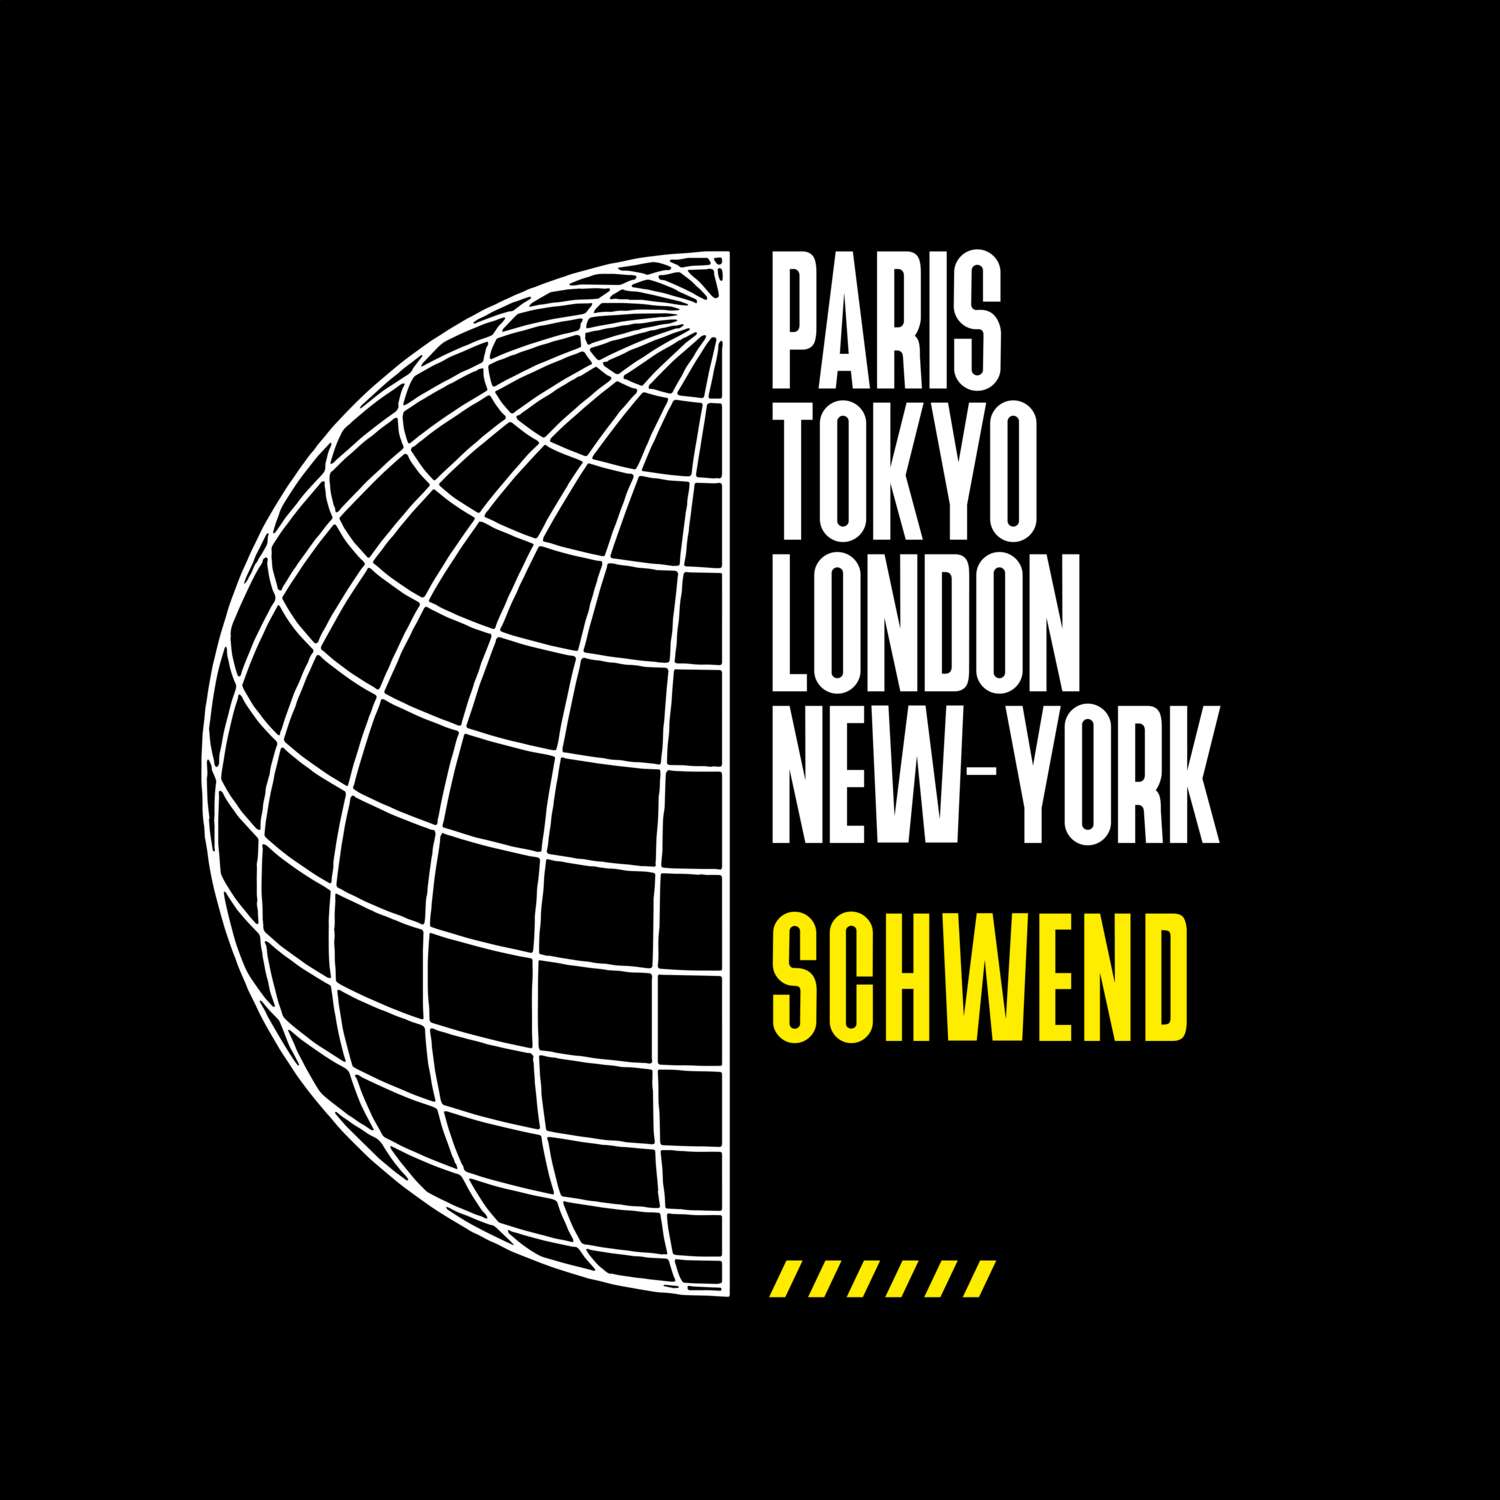 Schwend T-Shirt »Paris Tokyo London«